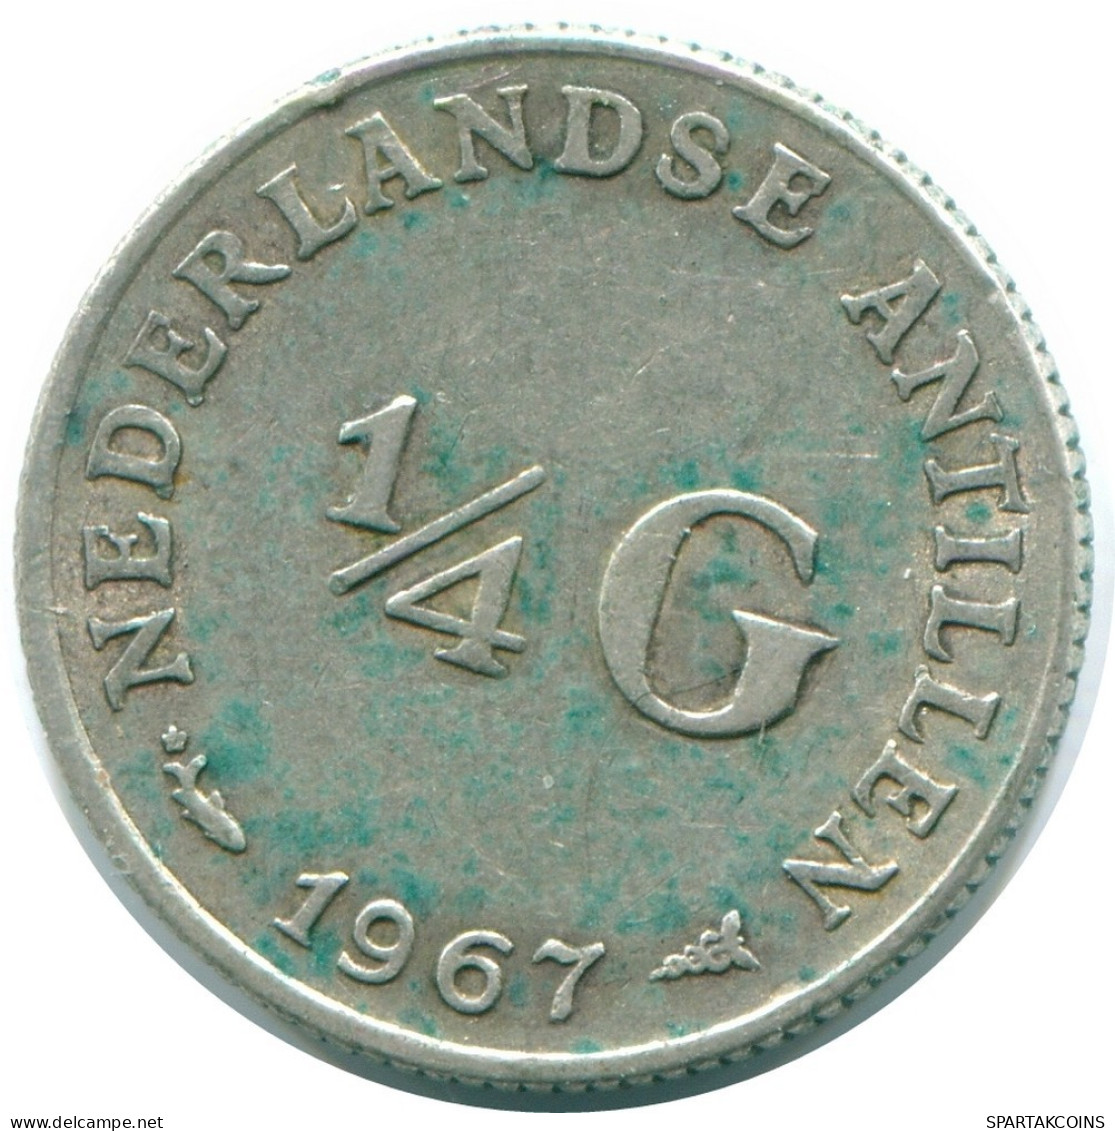 1/4 GULDEN 1967 NIEDERLÄNDISCHE ANTILLEN SILBER Koloniale Münze #NL11545.4.D.A - Antilles Néerlandaises